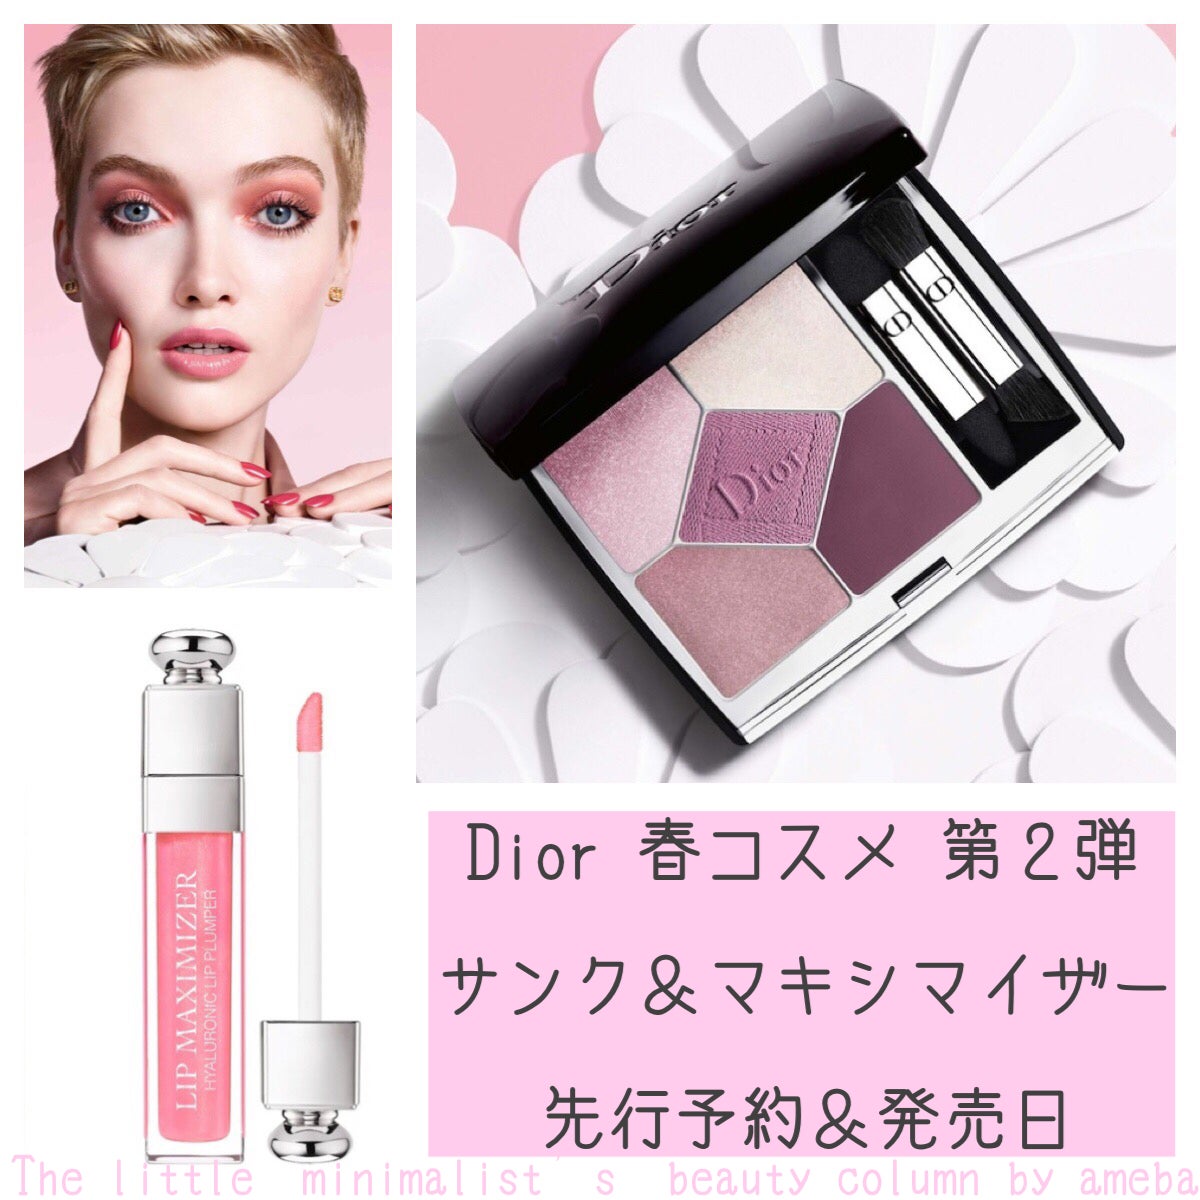 Dior 春コスメ第2弾【予約&先行発売日】 | リトルミニマリストの 